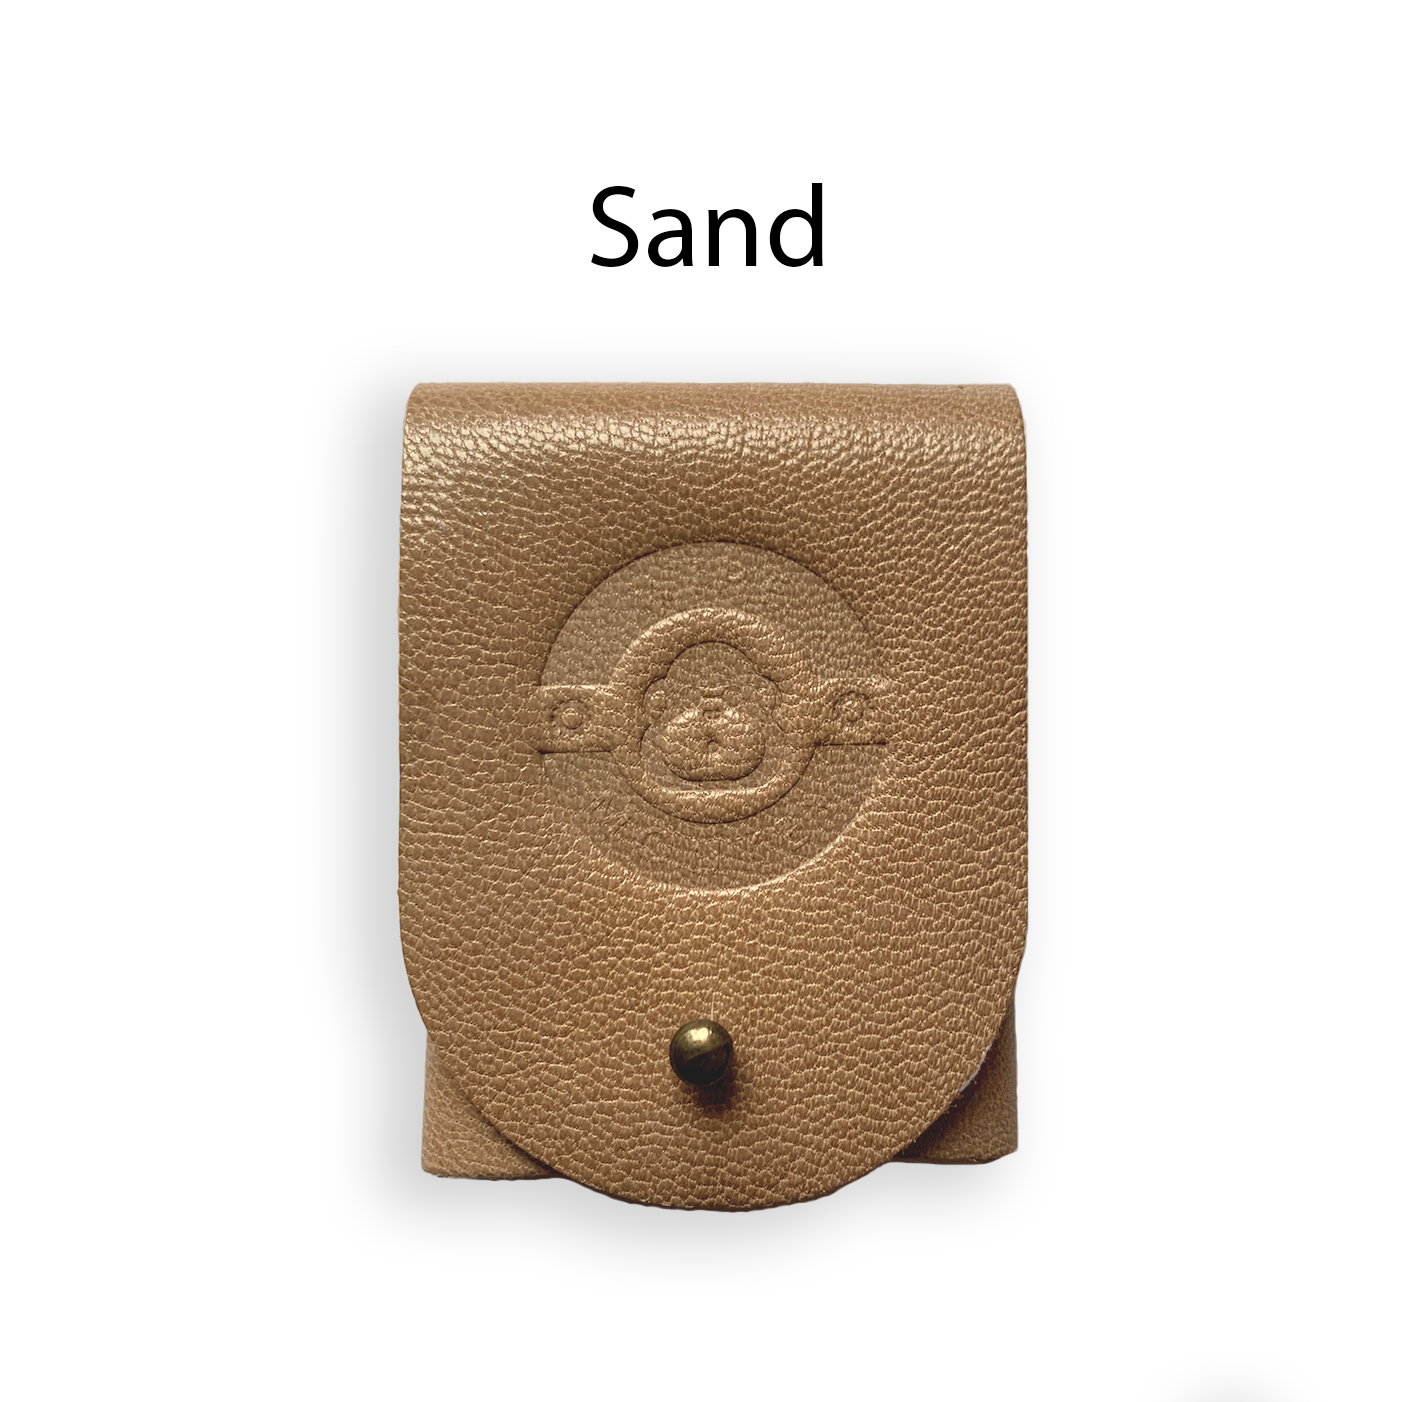 Produktbild Pouch (zur Aufbewahrung für UFO) Wiremonkey  Farbe  Sand